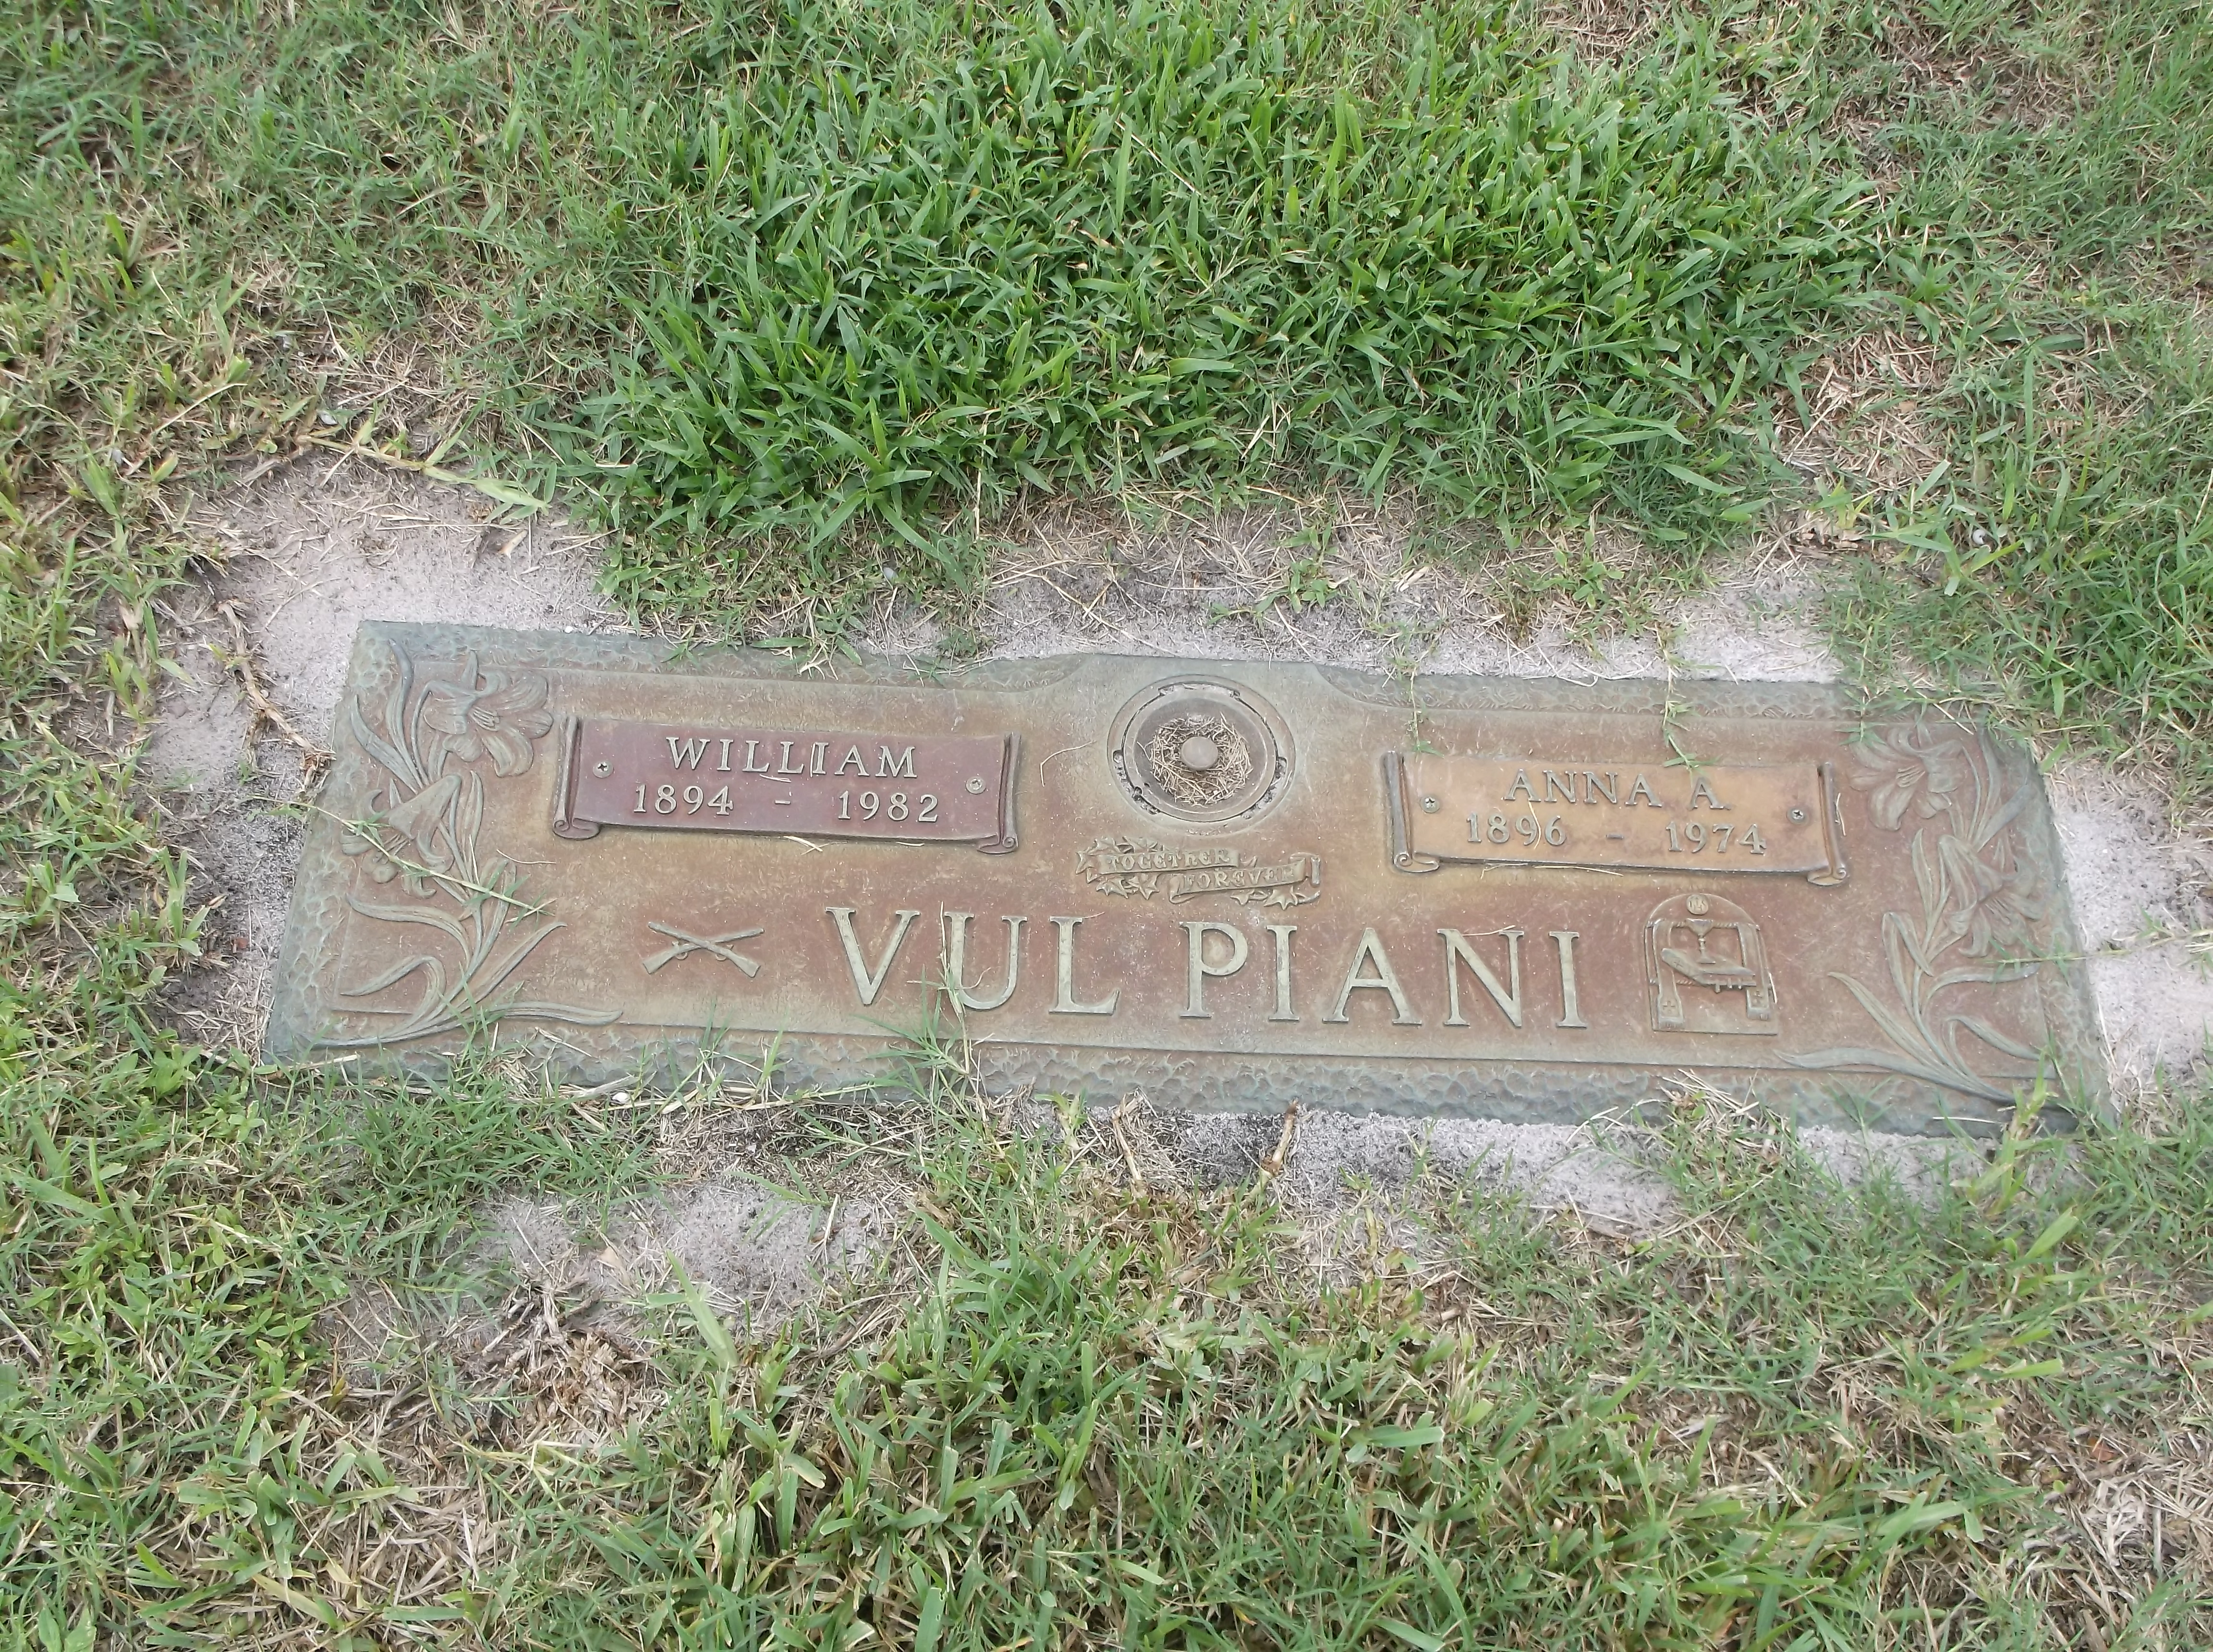 William Vulpiani